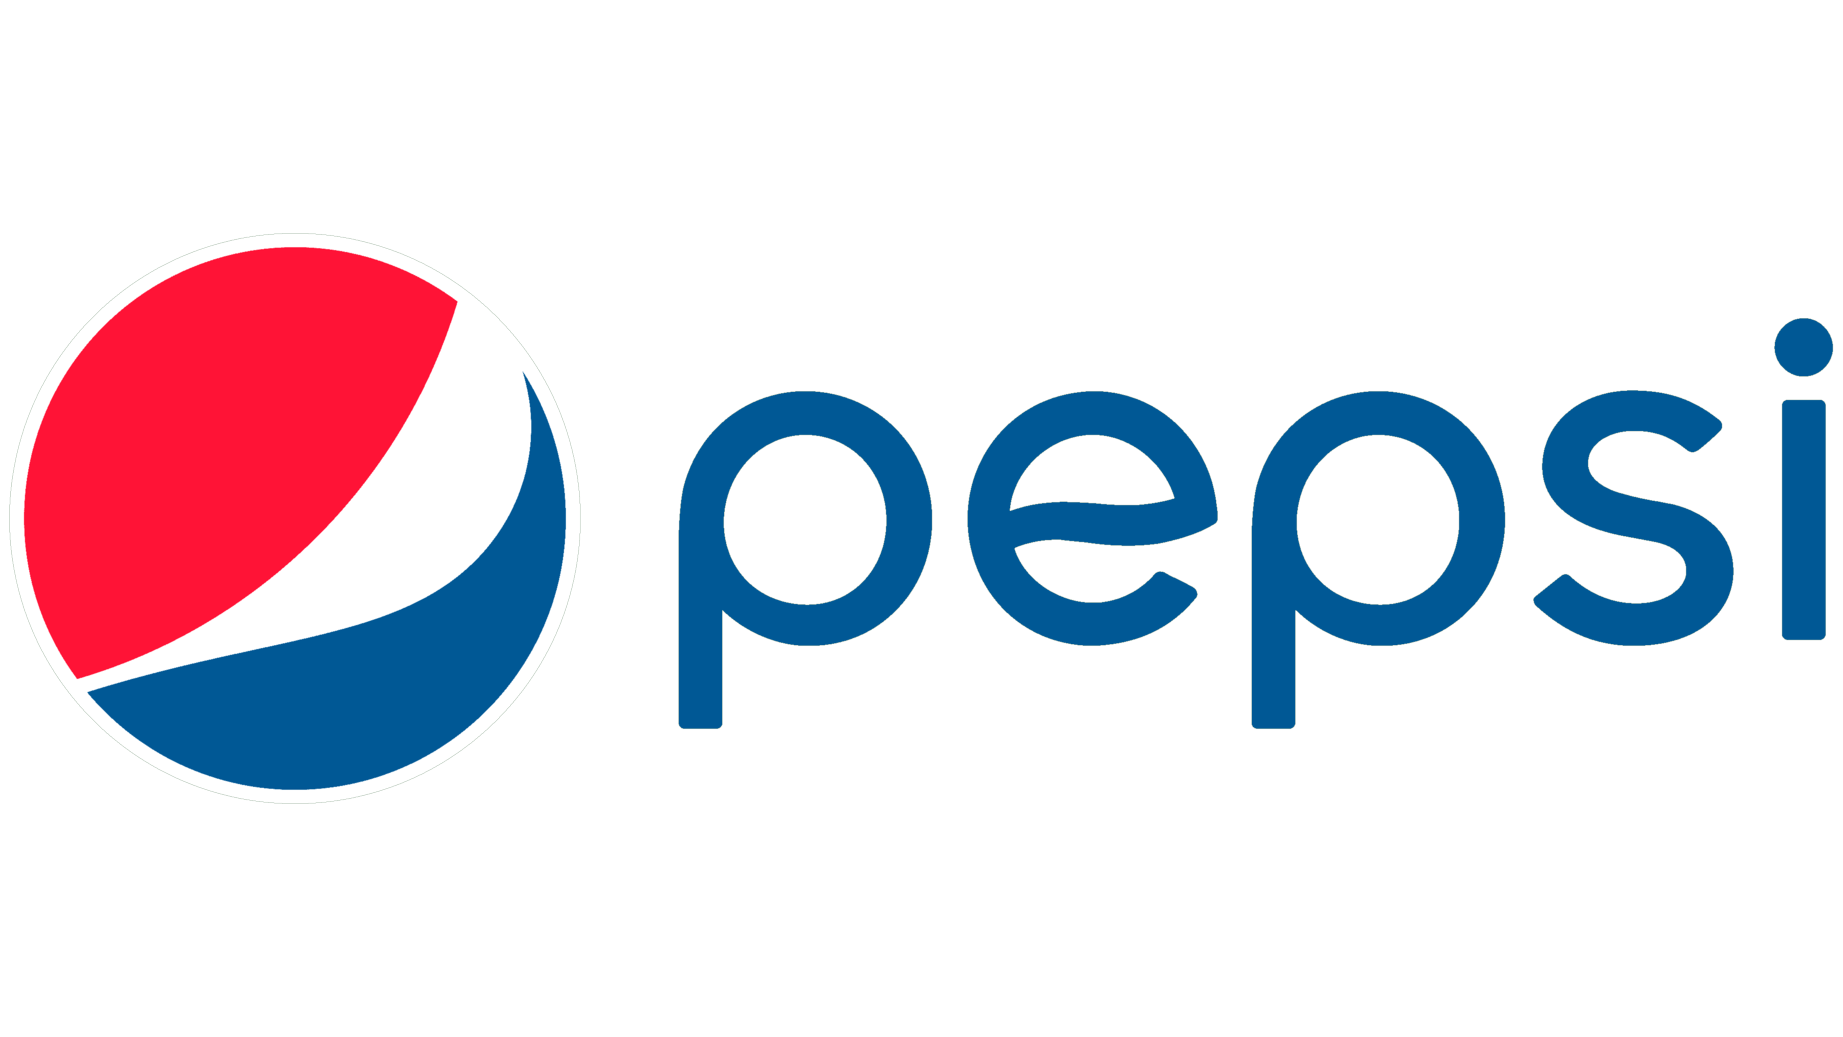 Pepsi symbol 2